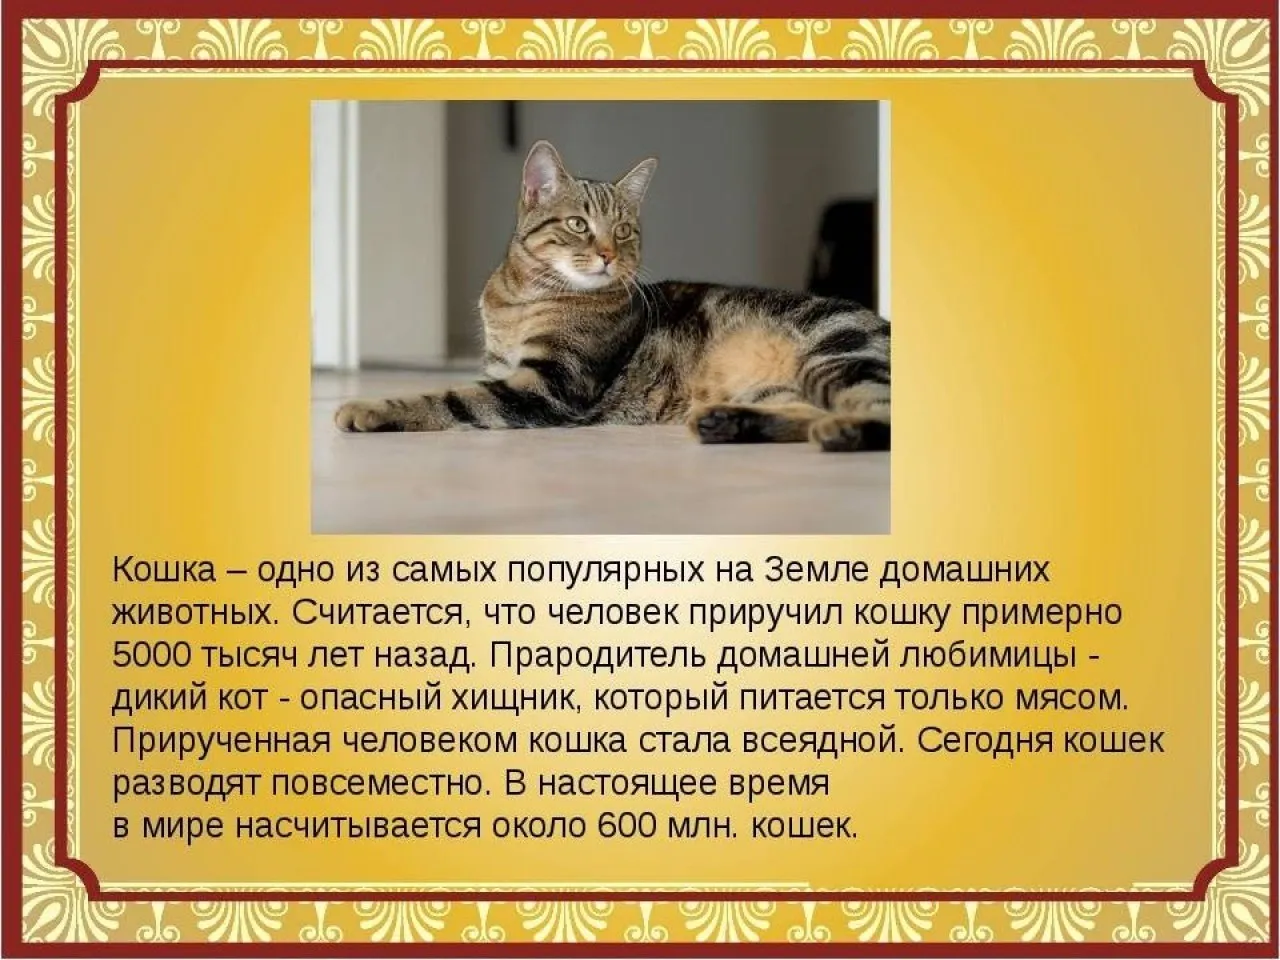 Рассказ о кошках окружающий мир. Рассказ о домашних кошках. Расказо домашней кошке. Сообщение о домашних кошках. Рассказ про домашнее животное кота.